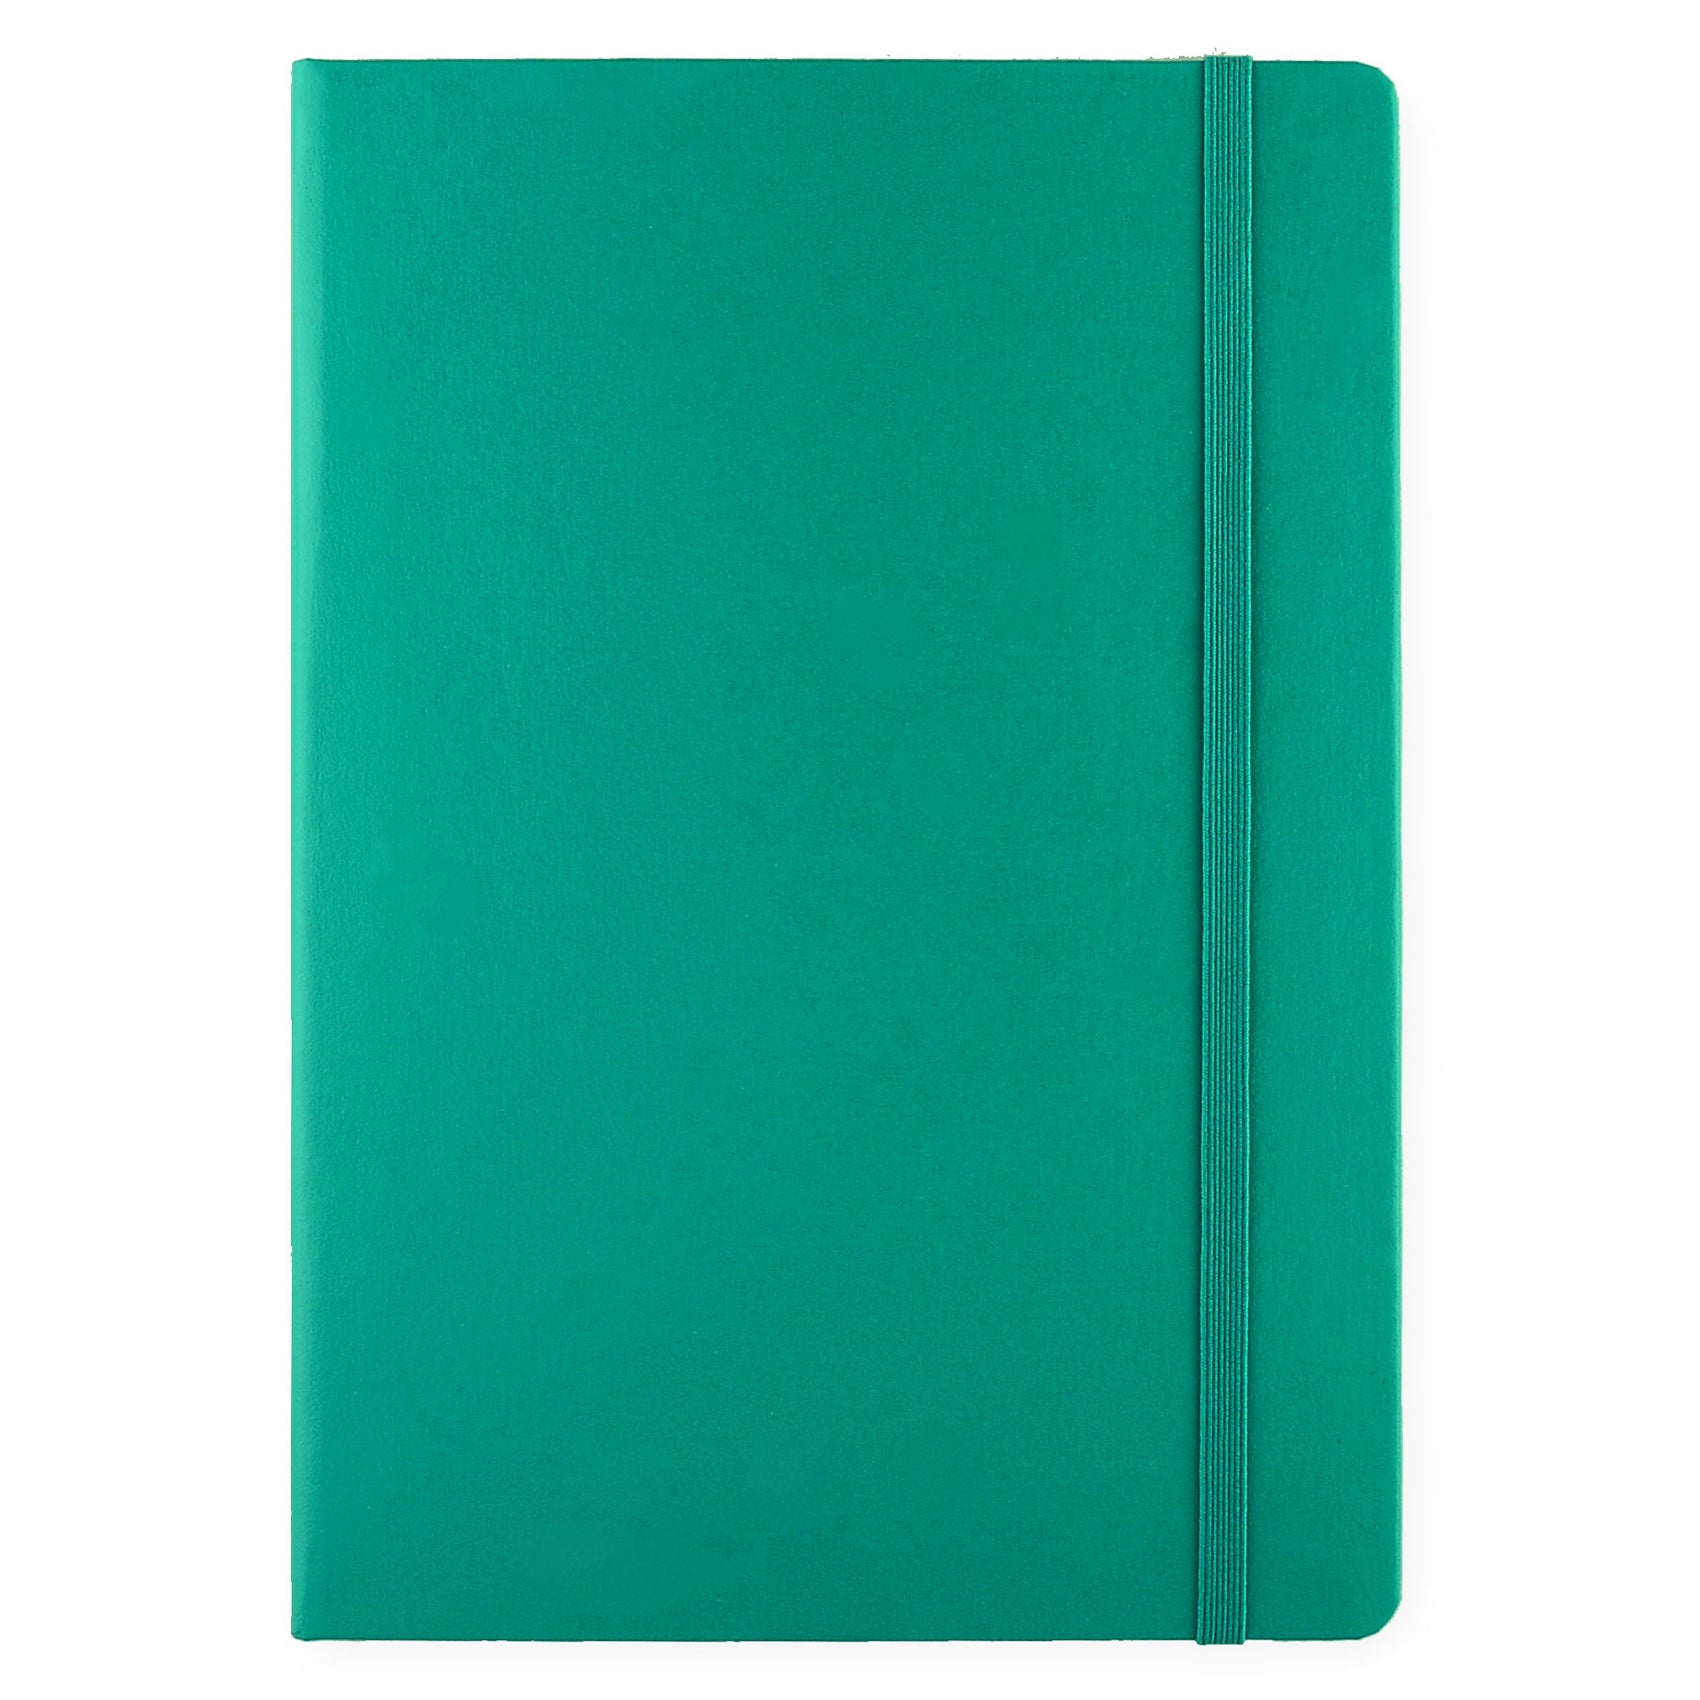 Leuchtturm Notebook Emerald A5 | Ruled or Dot Grid